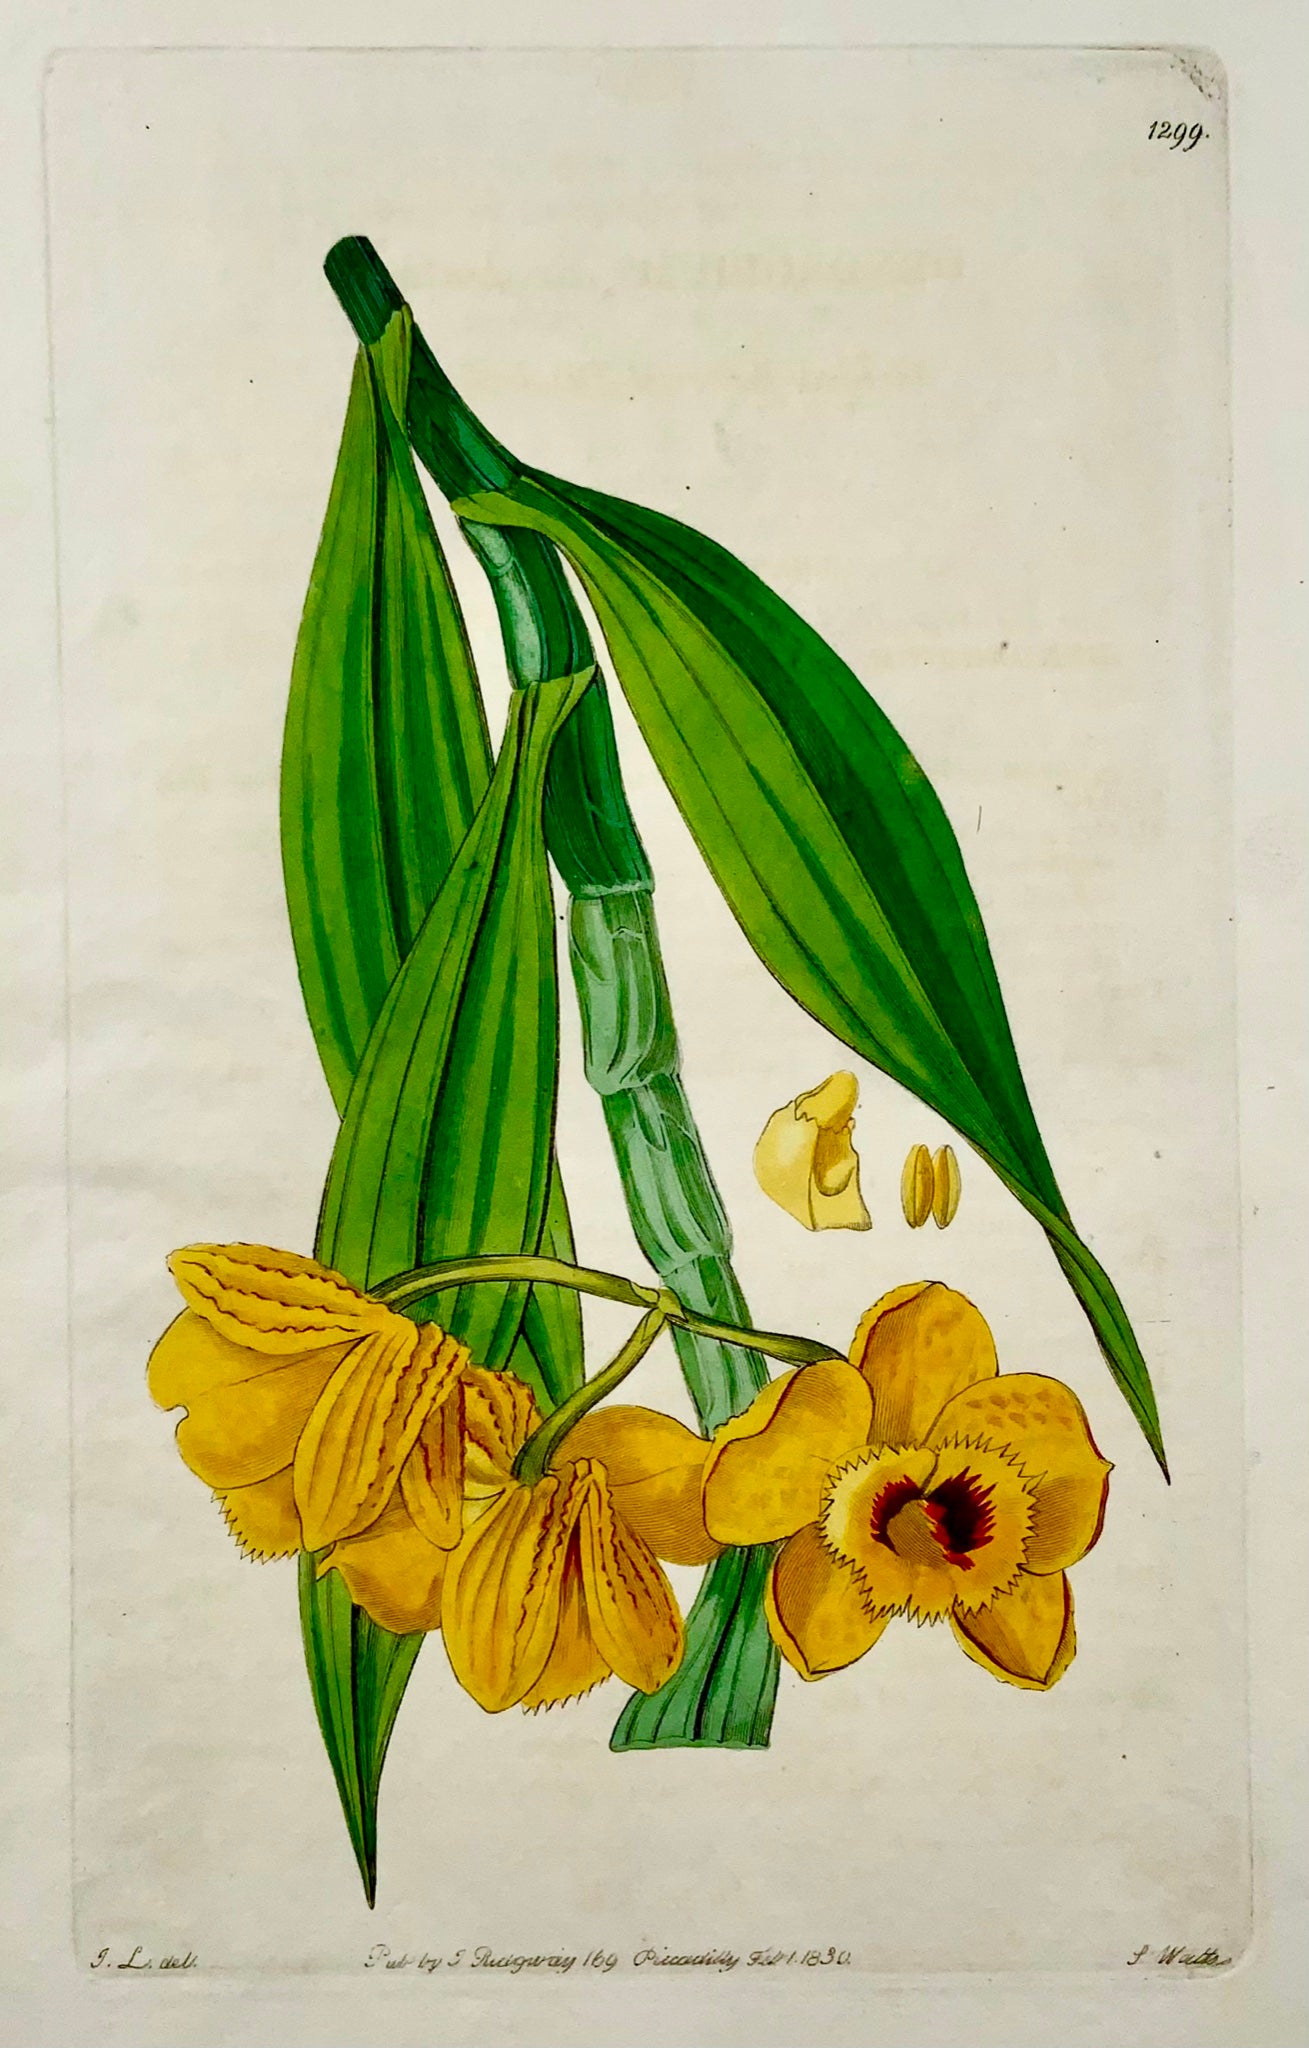 1830 Orchidea, S. Watts, incisione su rame, bel colore originale a mano, botanica